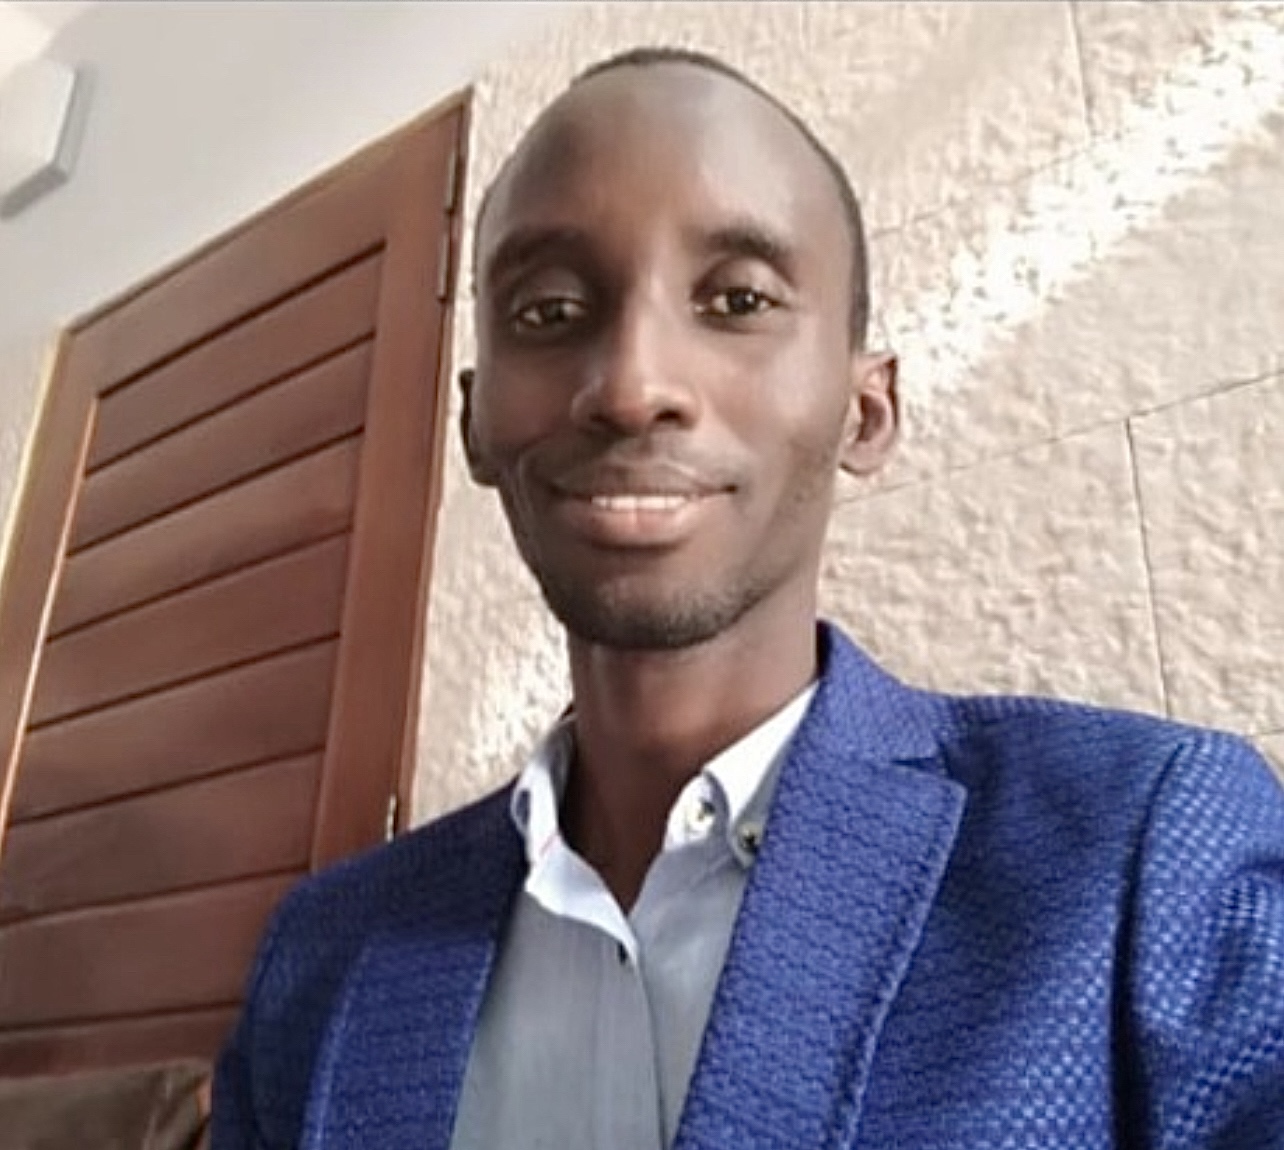 Enlevé dans le nord du Cameroun et libéré : Ballé Diouf est rentré à Dakar